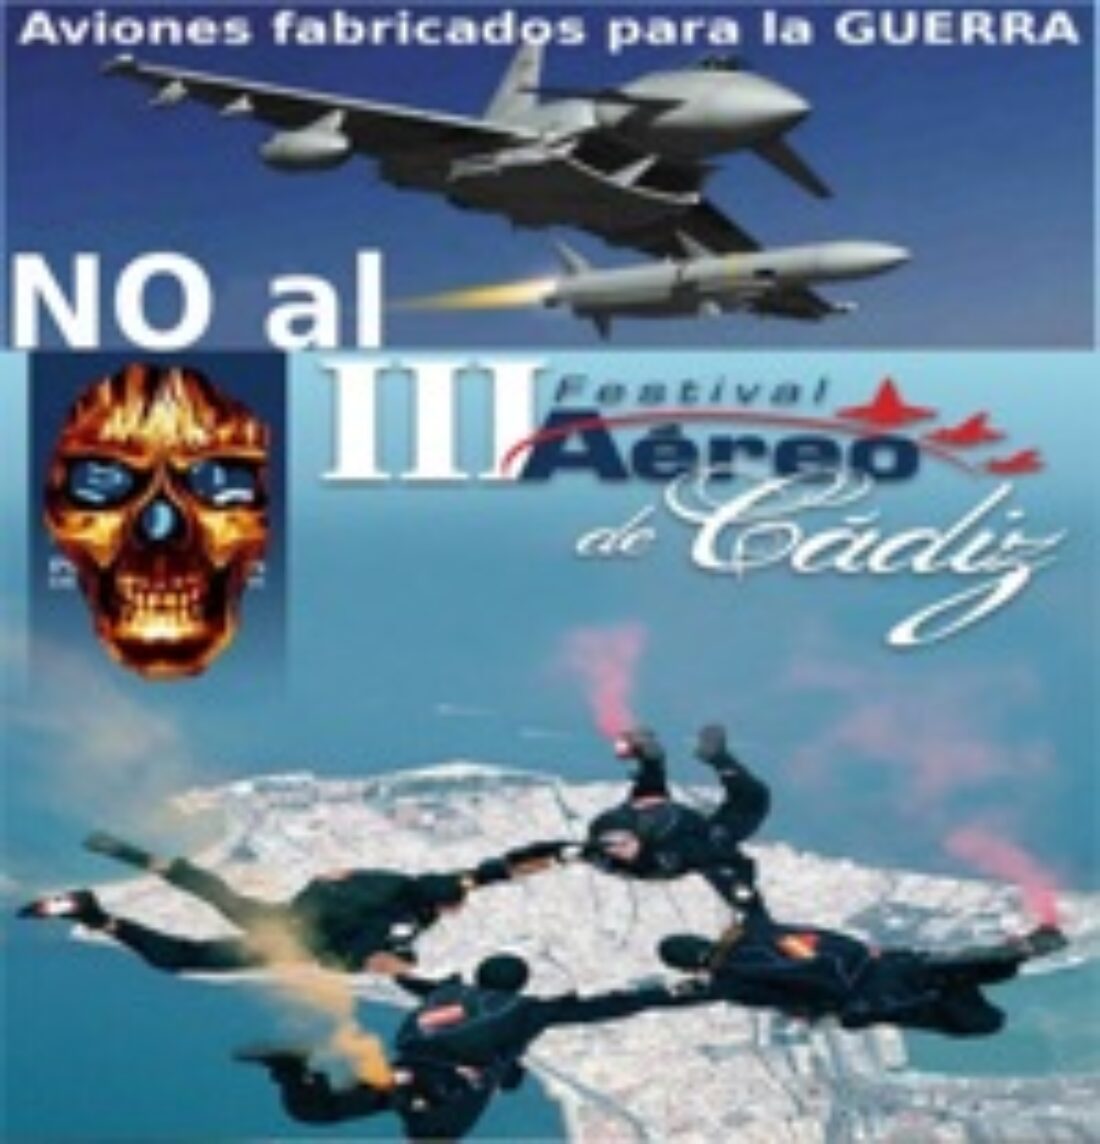 12 septiembre, Cádiz : No al Festivel Aéreo – Aviones fabricados para la guerra